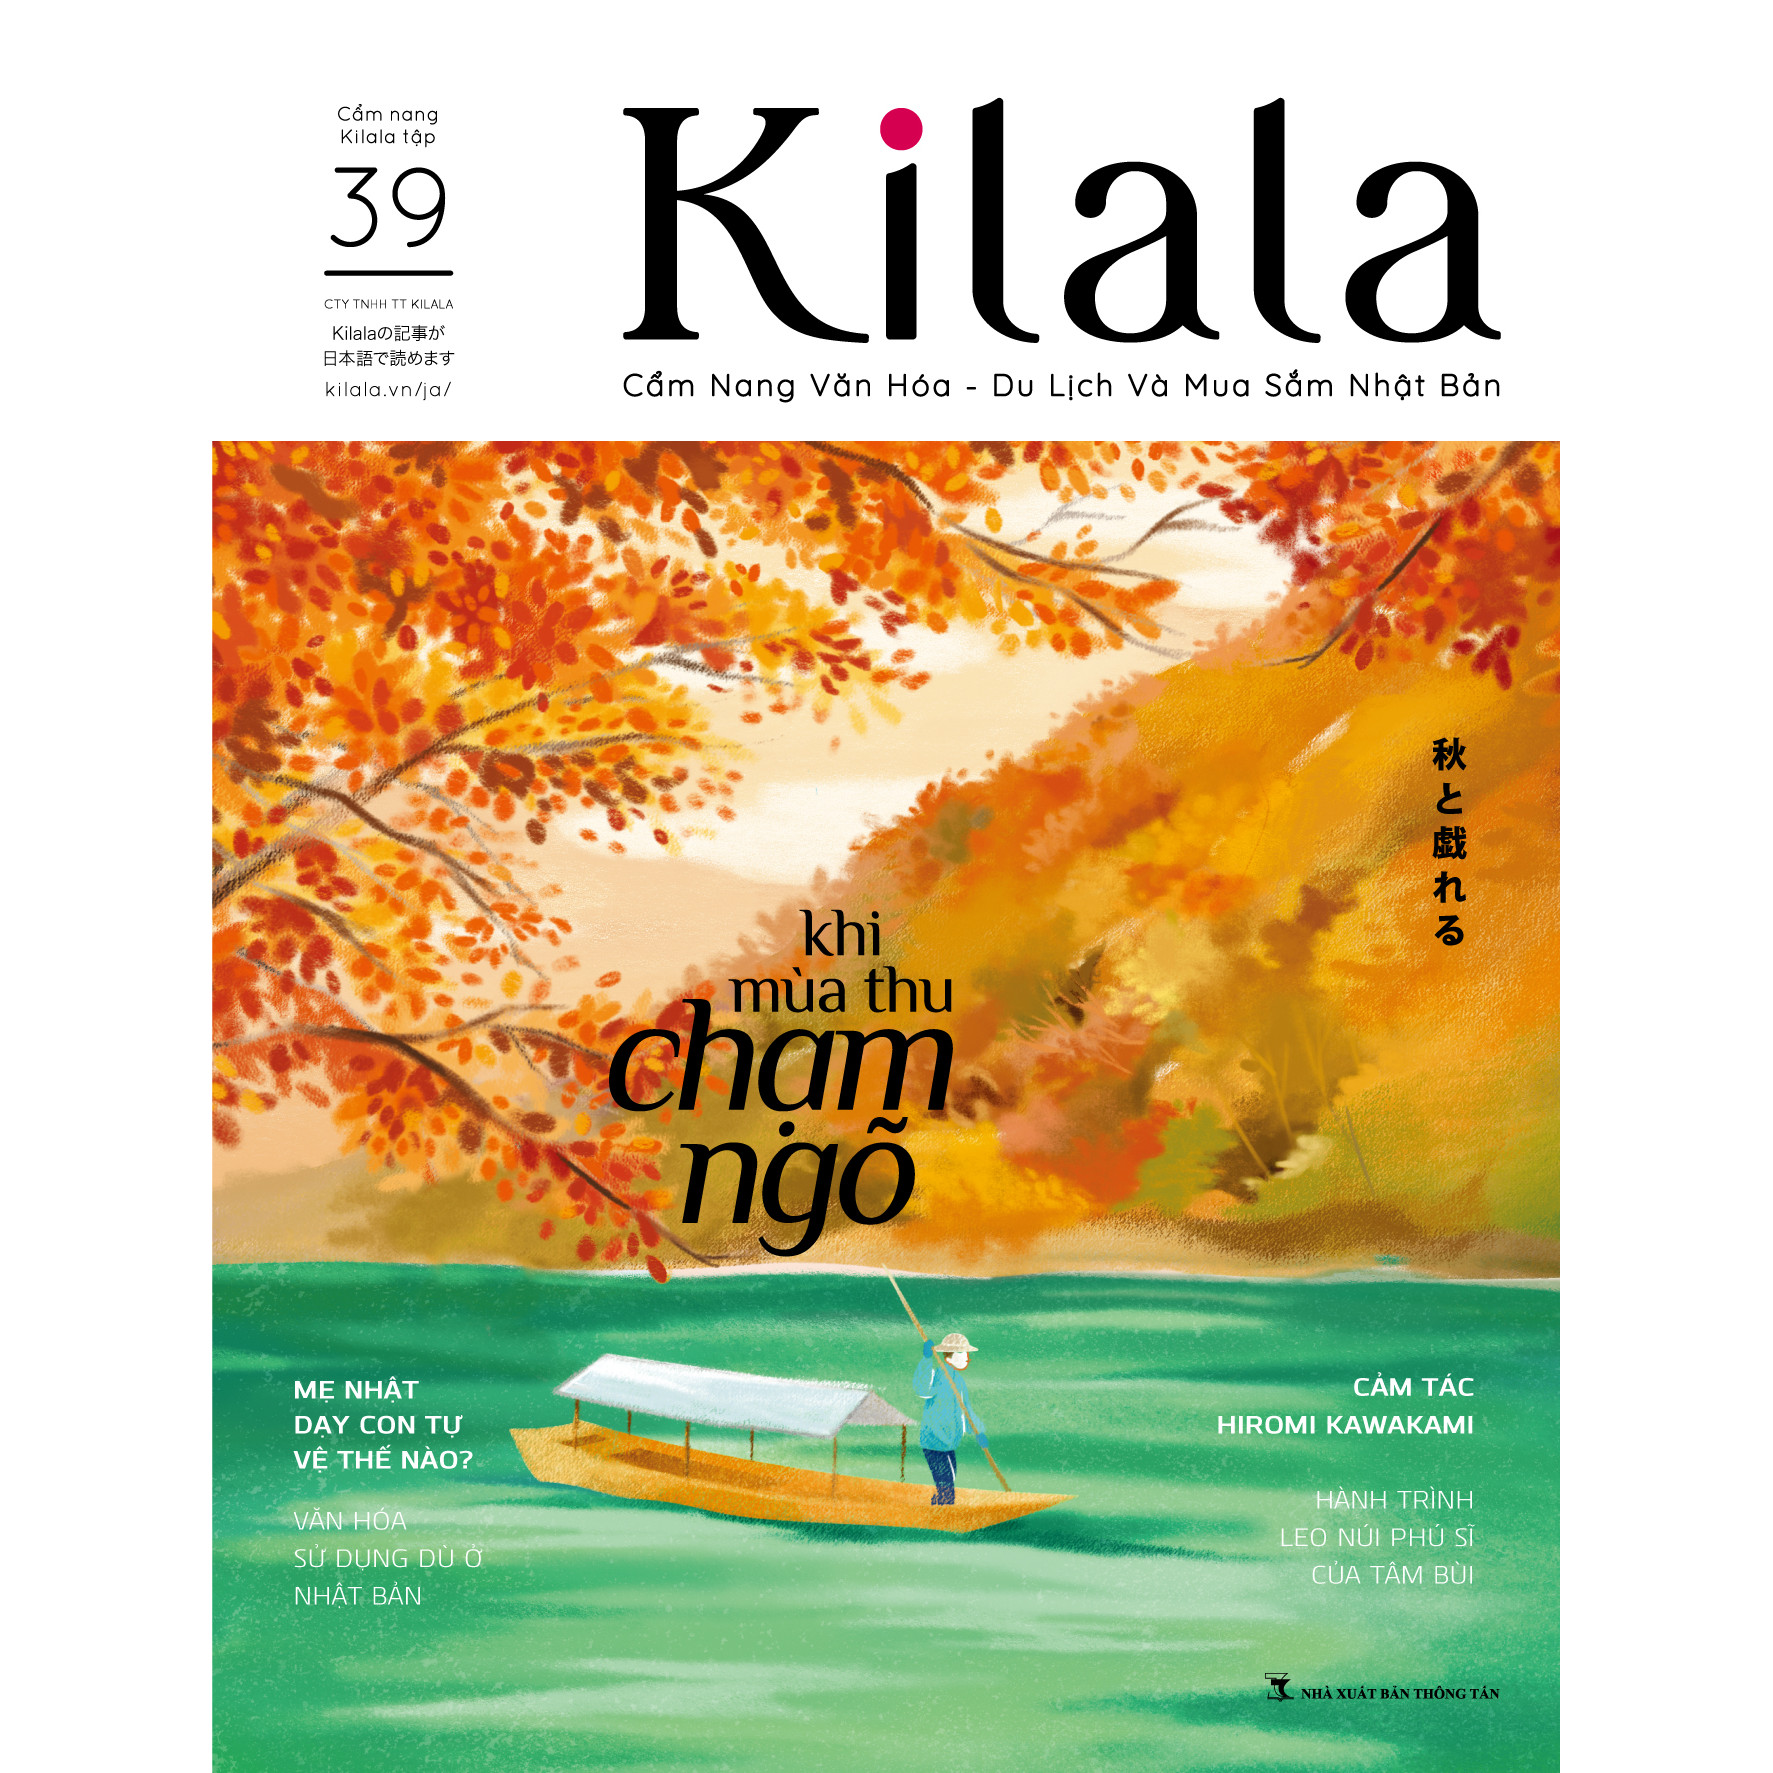 Kilala tập 39 | Cẩm nang văn hóa - du lịch và mua sắm Nhật Bản